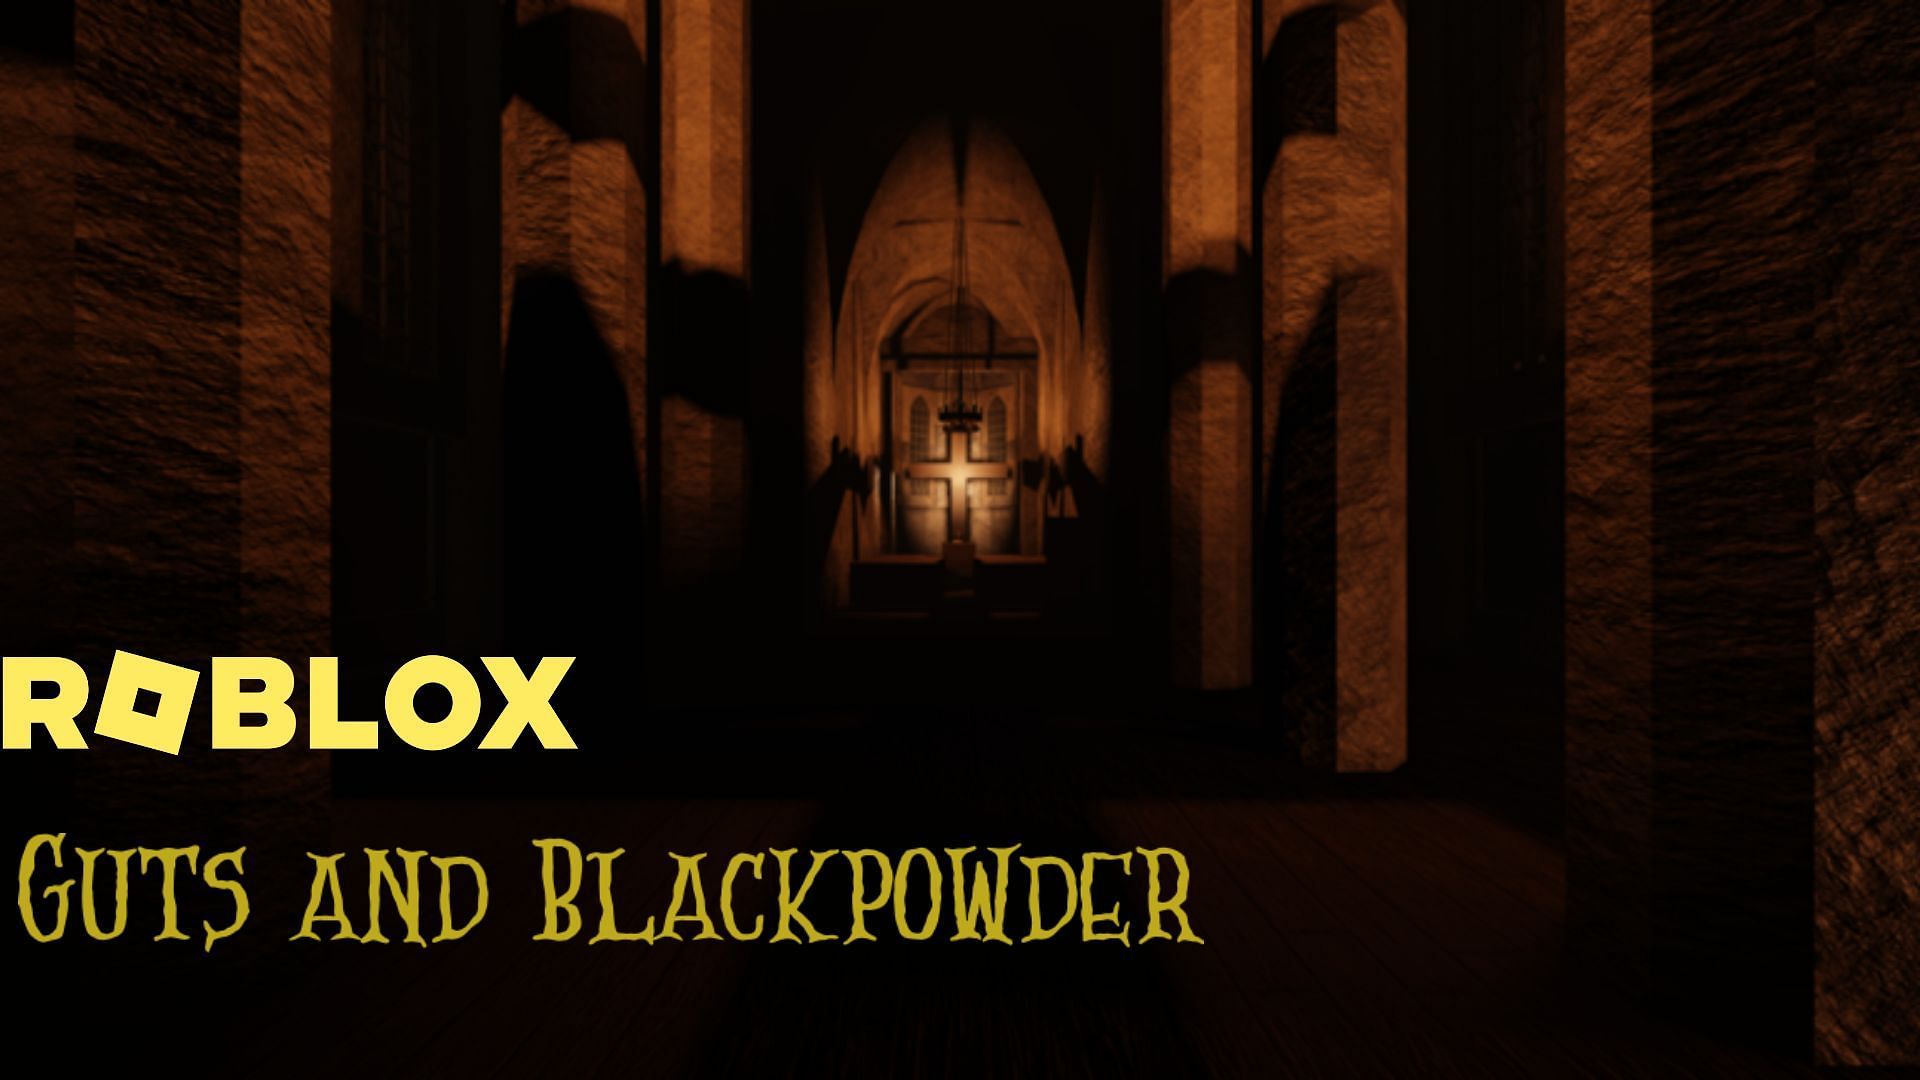 Guts & Blackpowder - Roblox